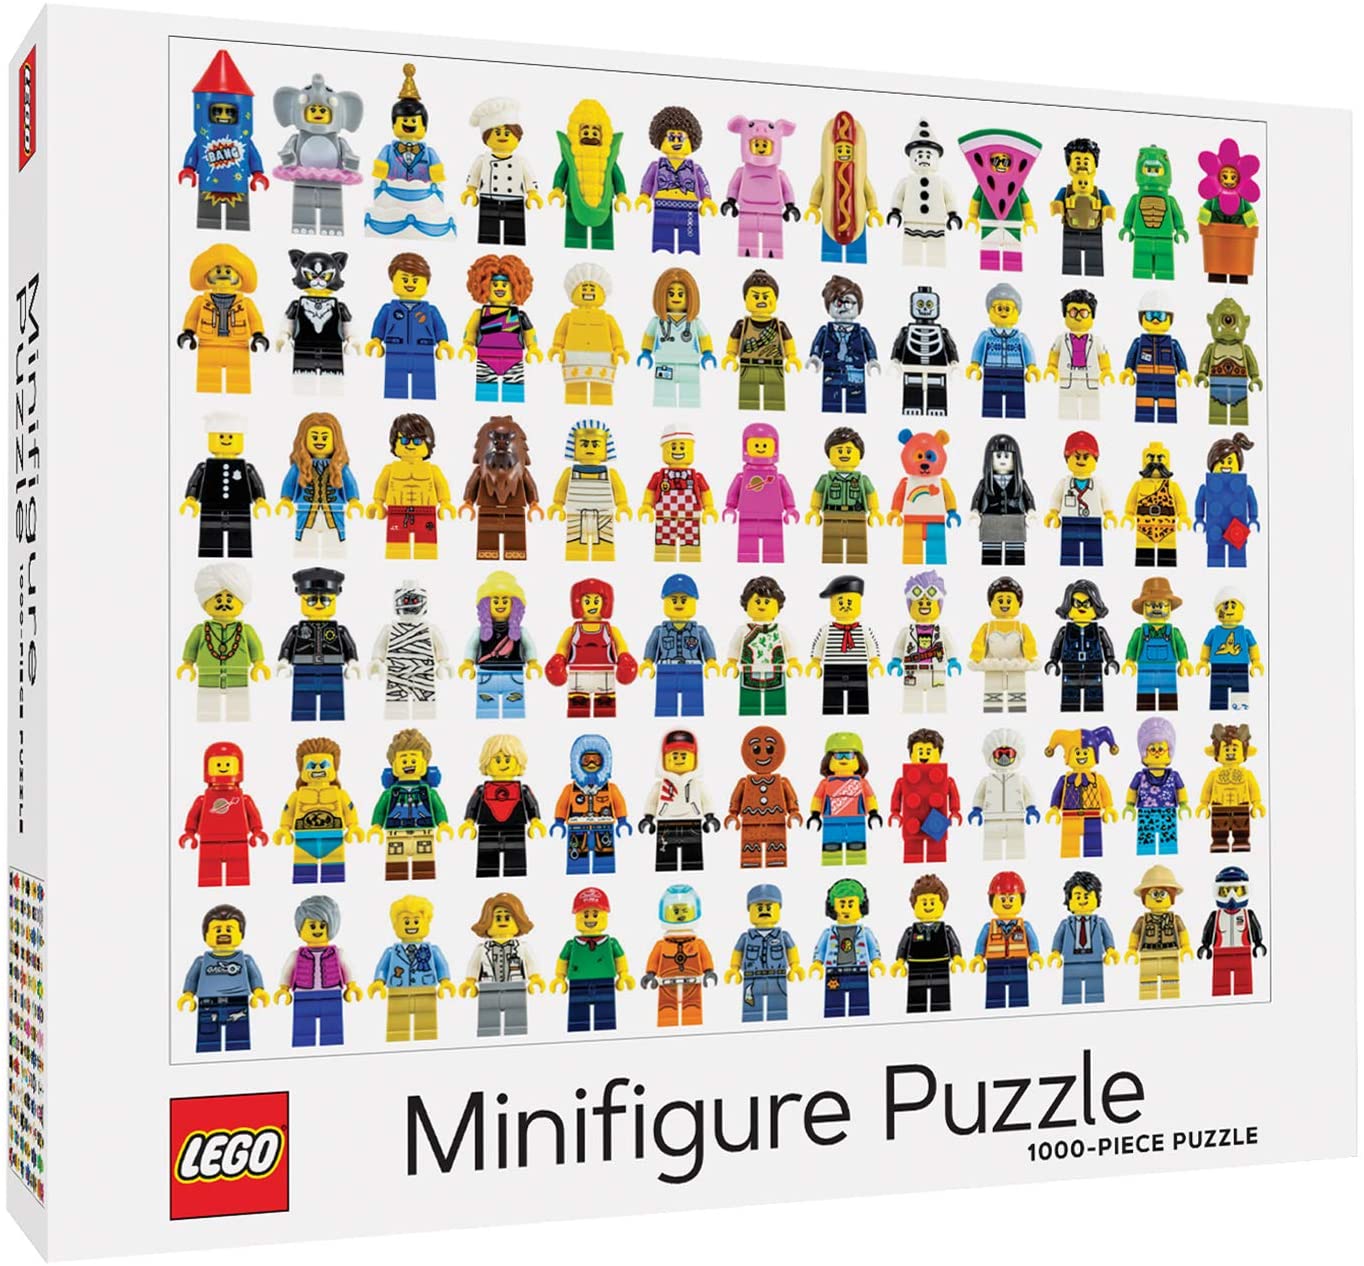 Lego Minifigure Puzzle (1000 pc puzzle)